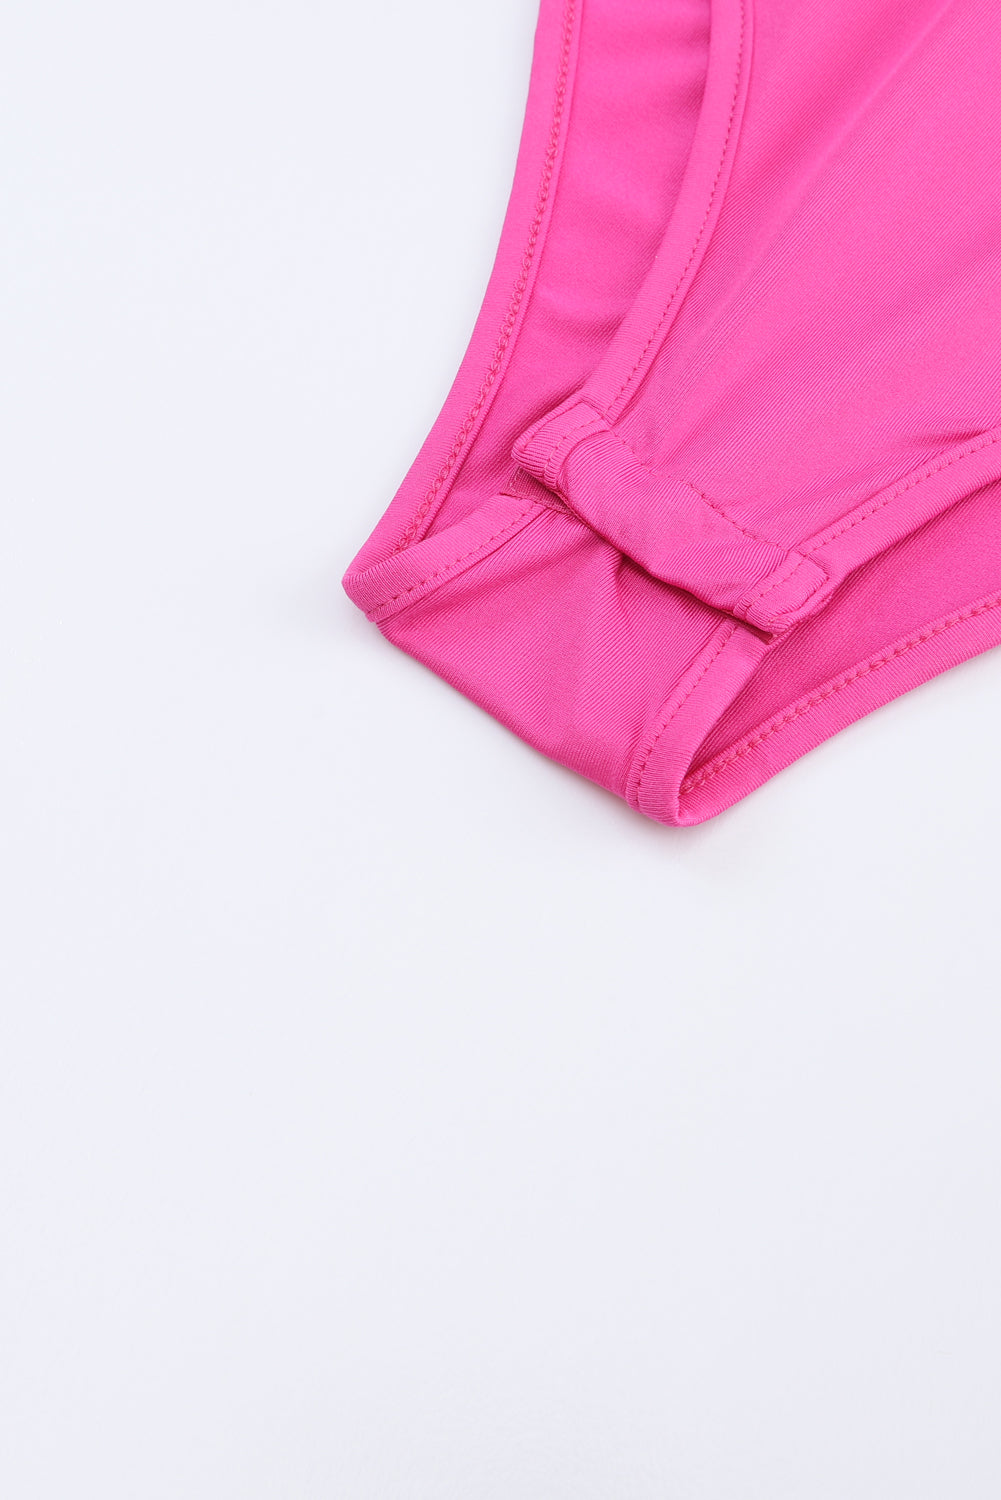 Rose Sparkle Color Block V-Neck Long Sleeve Bodysuit